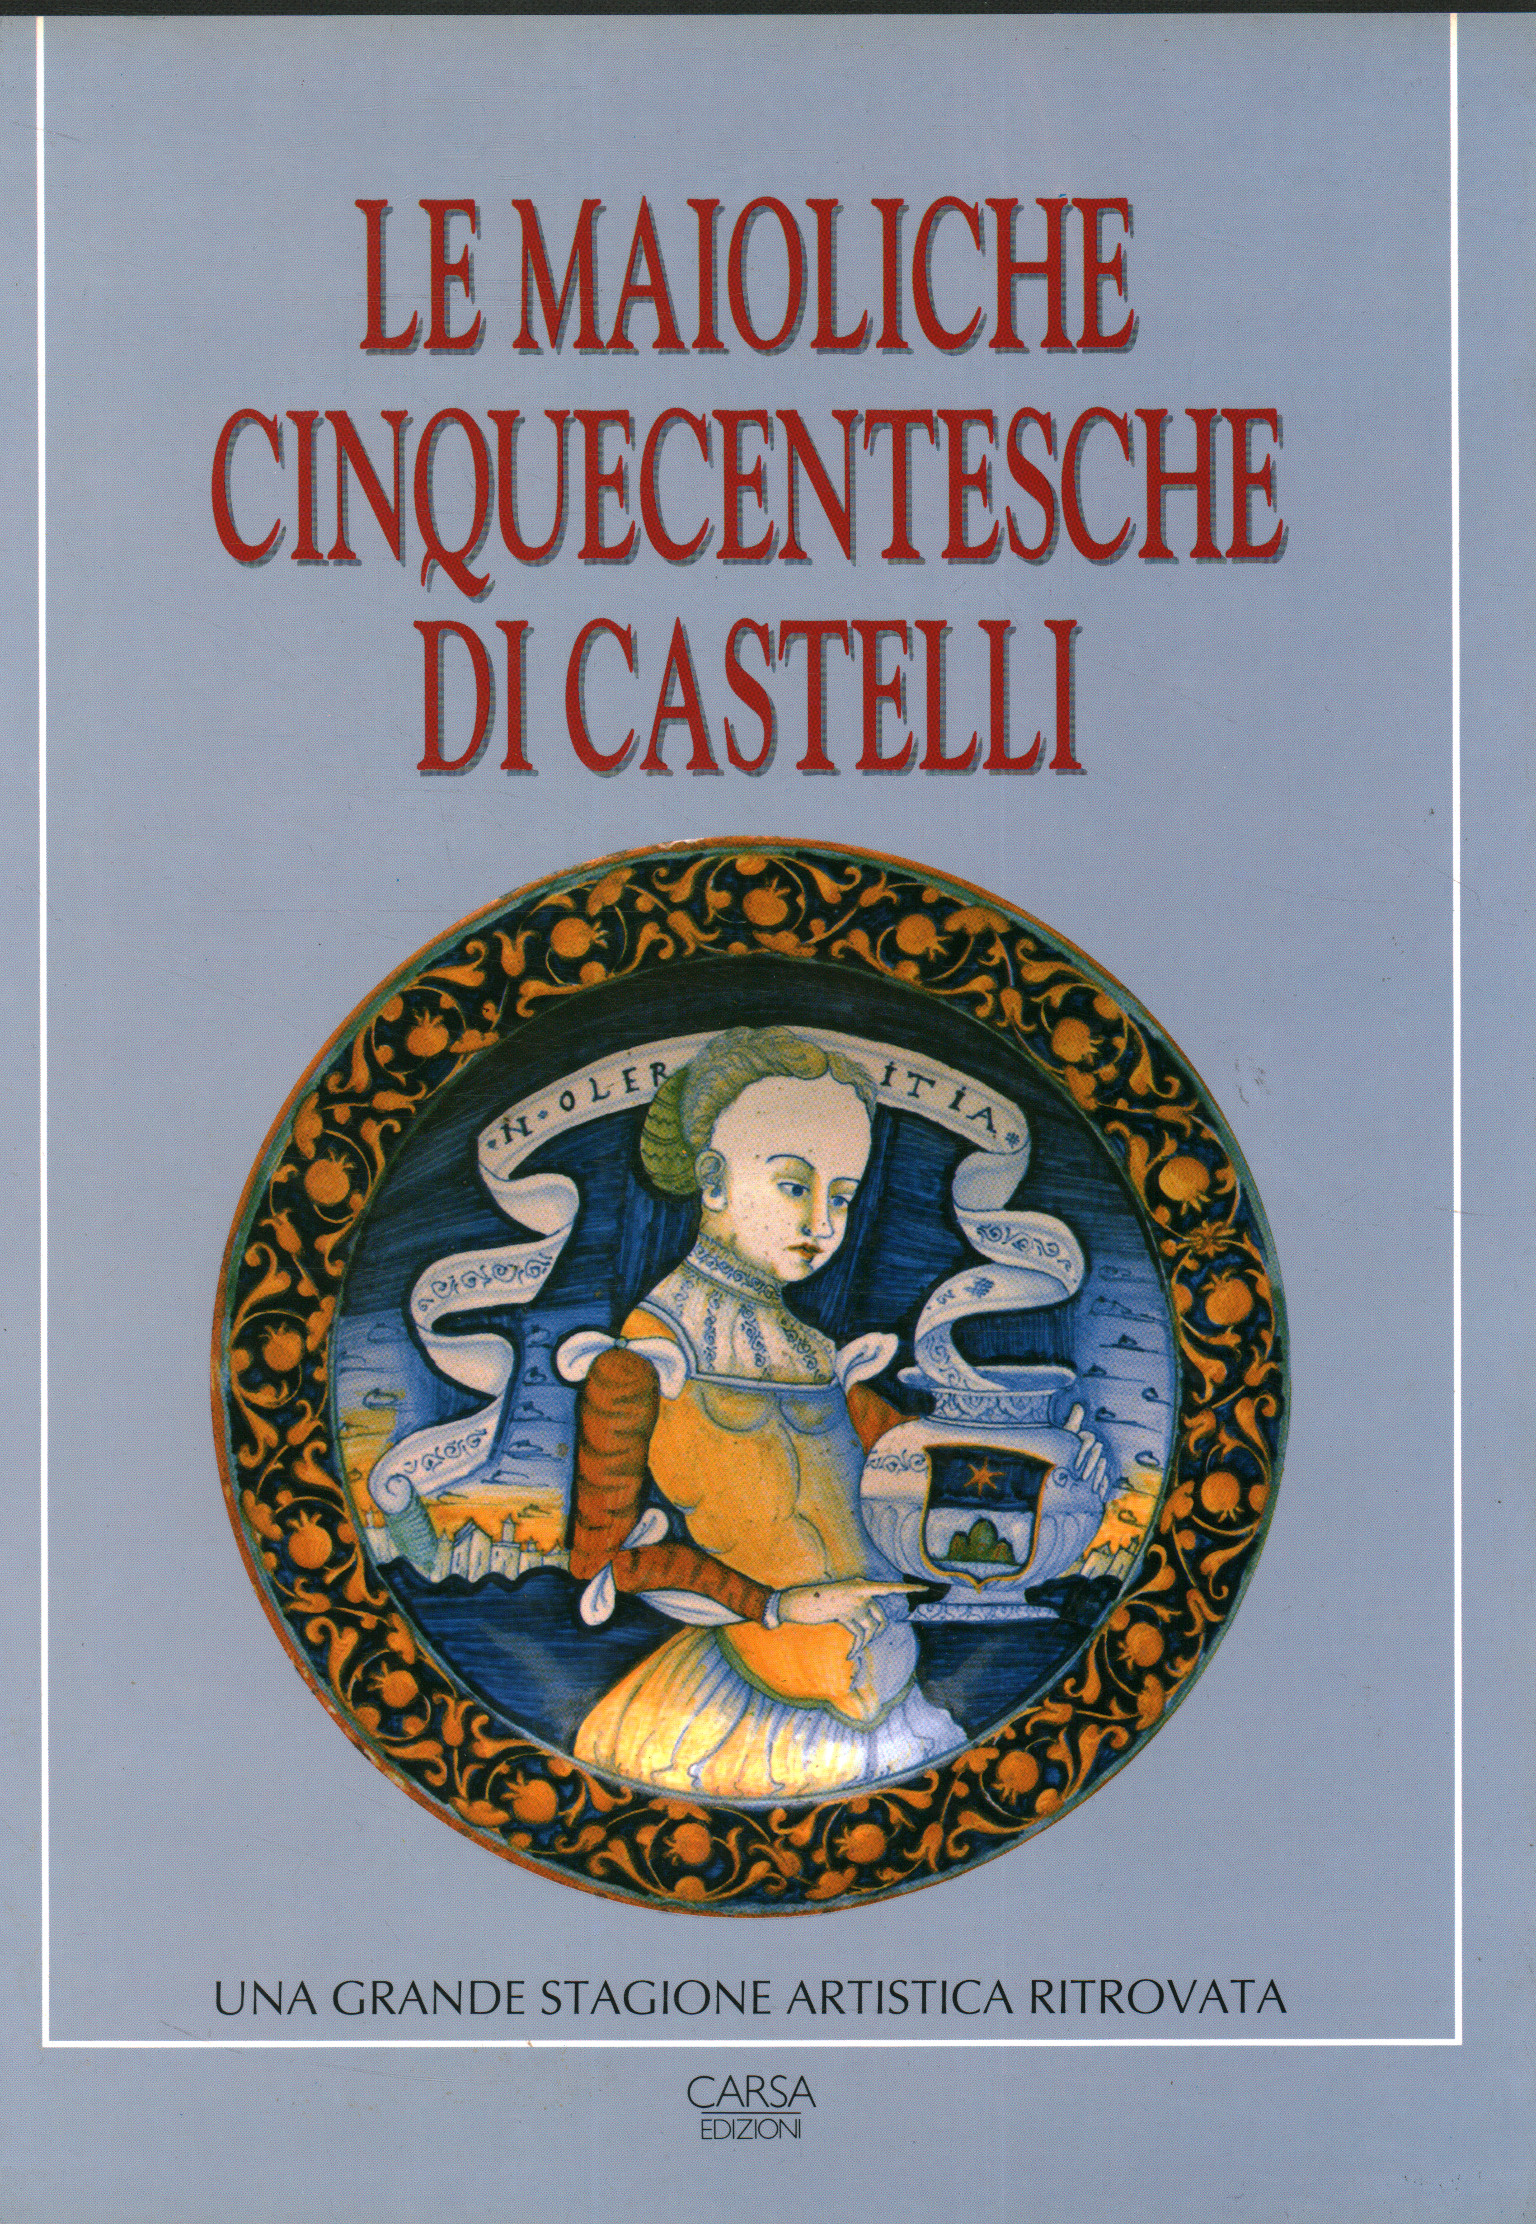 Die Majolika von Castelli aus dem 16. Jahrhundert